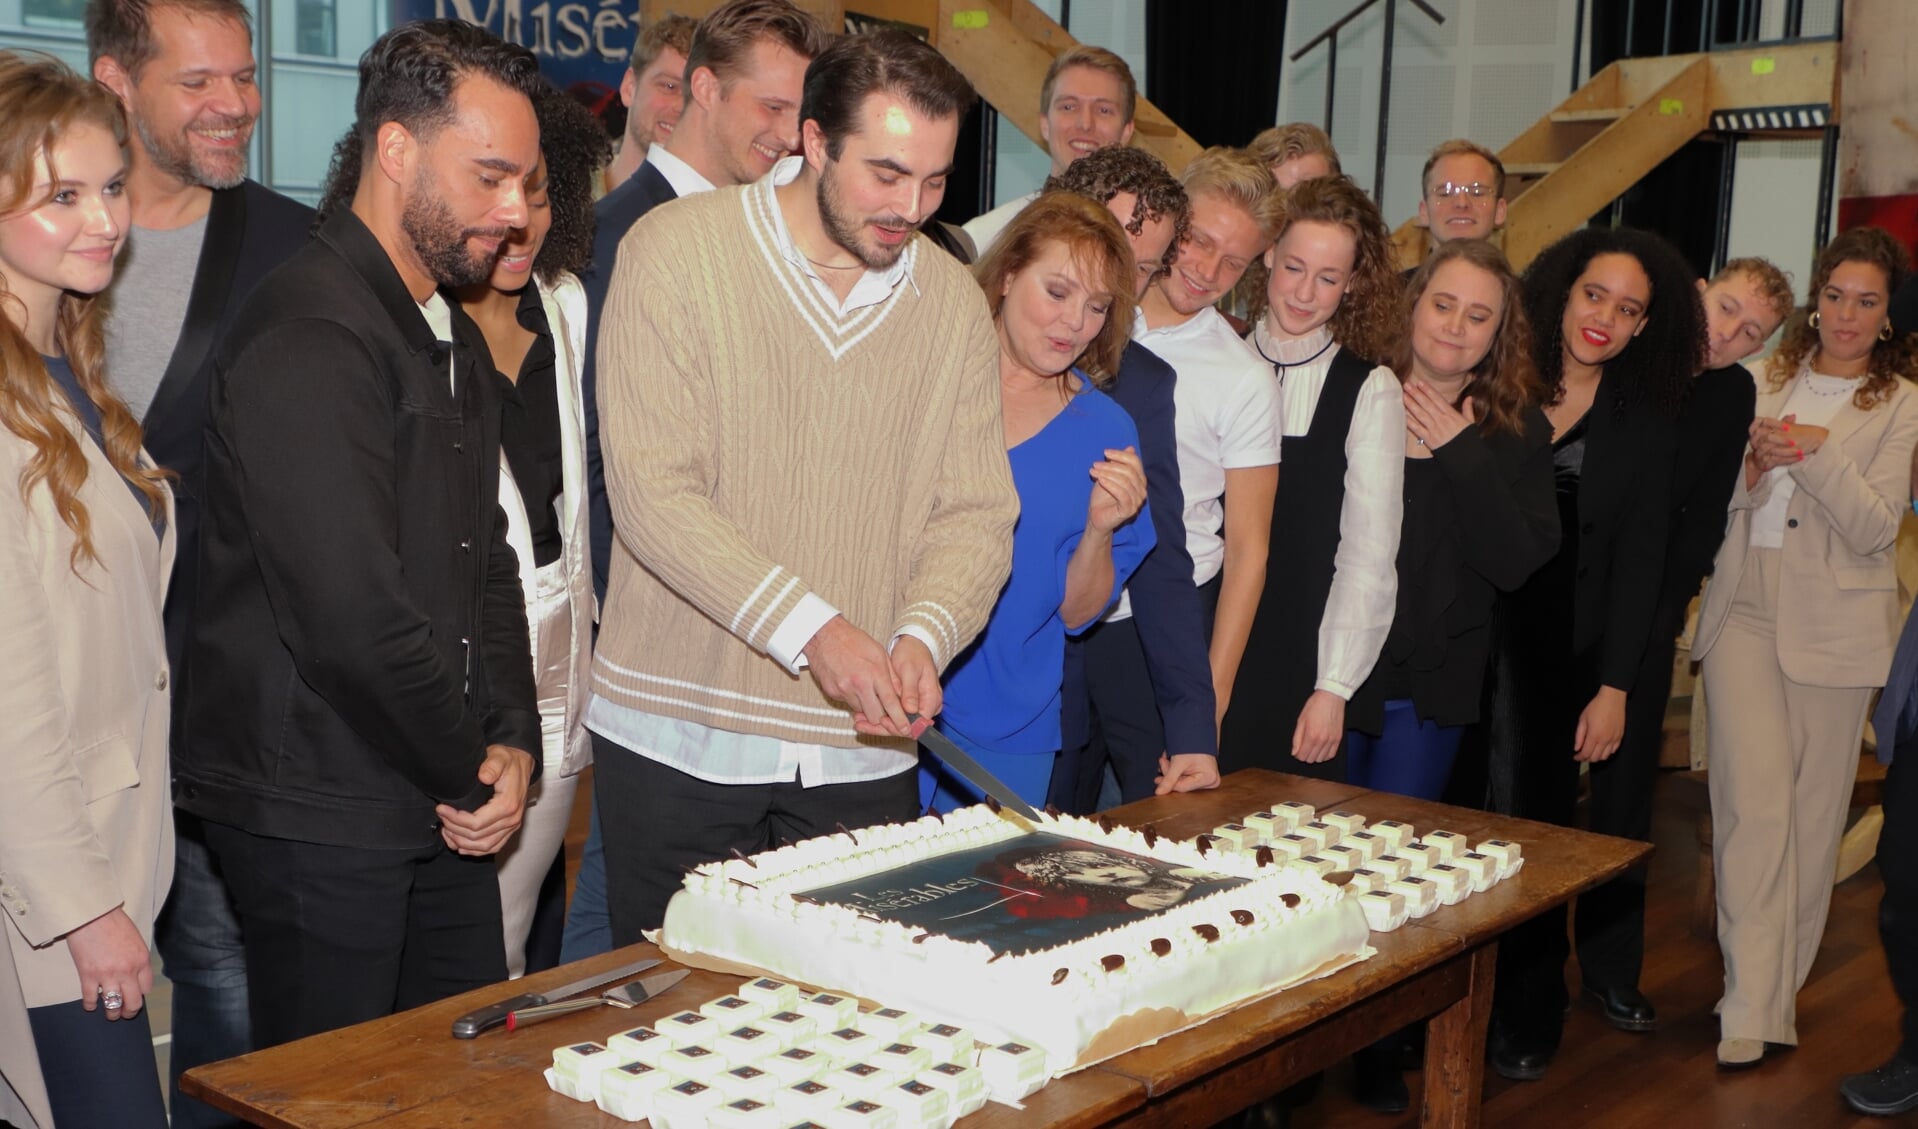 De repetities voor Les Misérables in Kunstlinie gingen dinsdag van start met aansnijden van een taart. (Foto: Studio Rotgans/Rinus Lettinck)